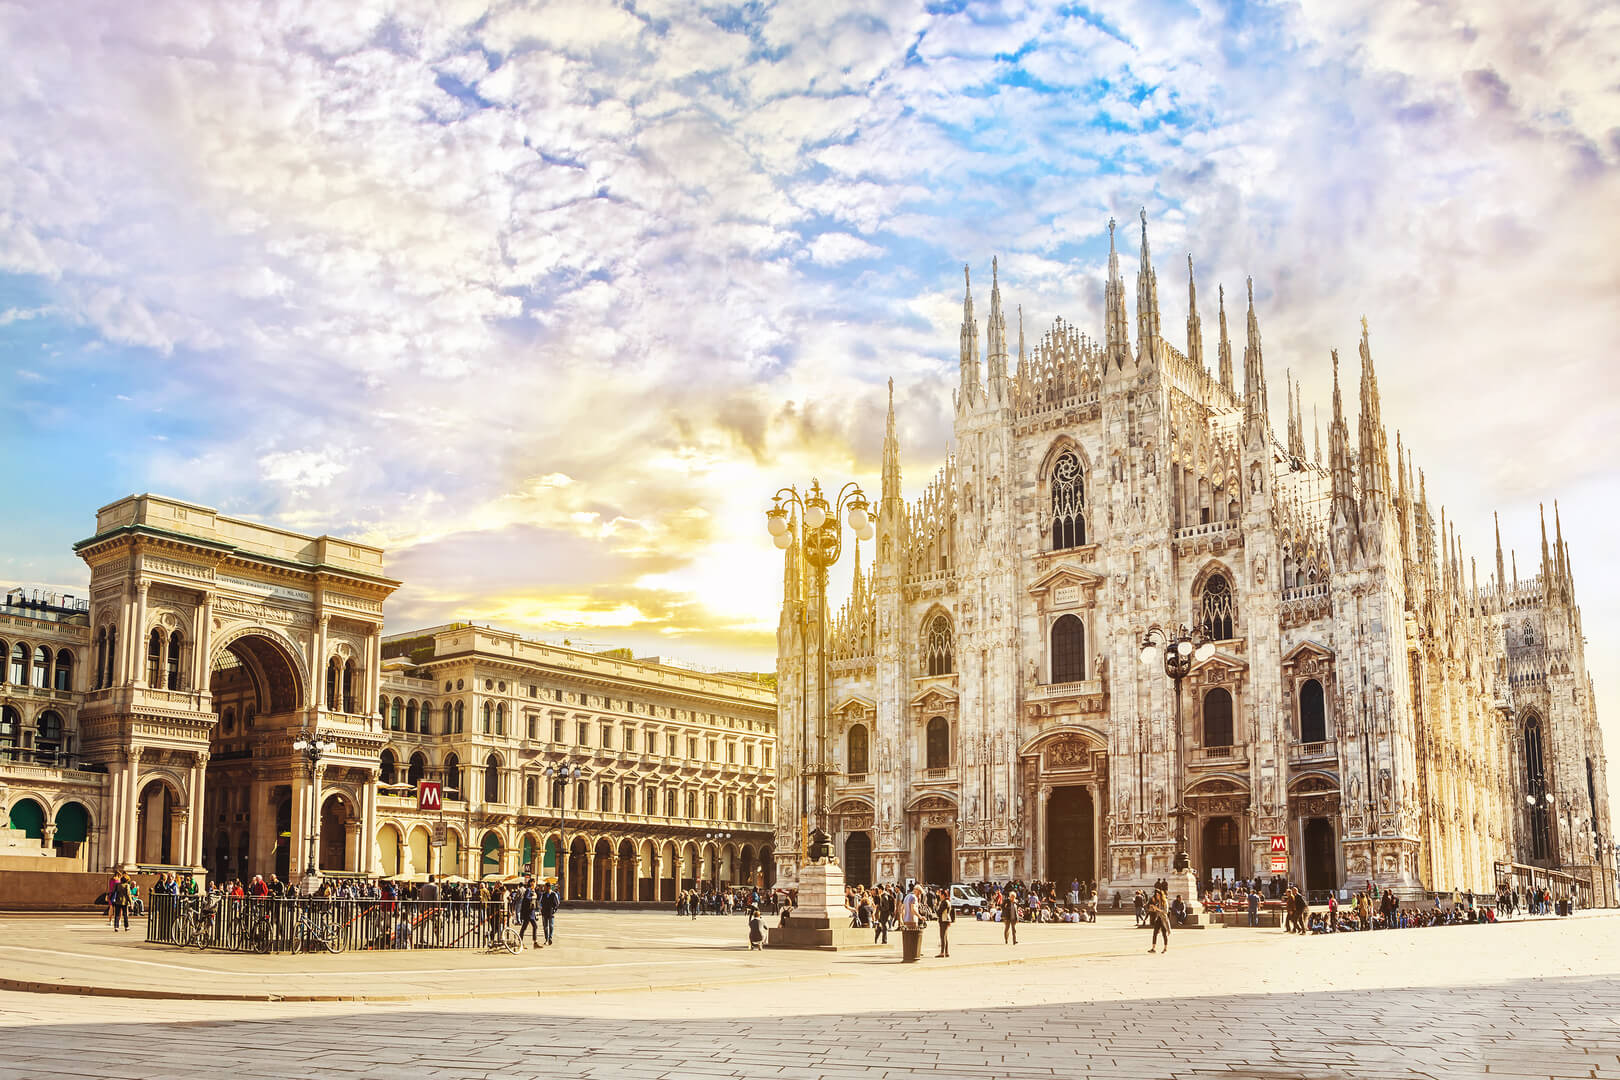 Cathédrale Duomo di Milano et galerie Vittorio Emanuele sur la place Piazza Duomo au matin ensoleillé, Milan, Italie.